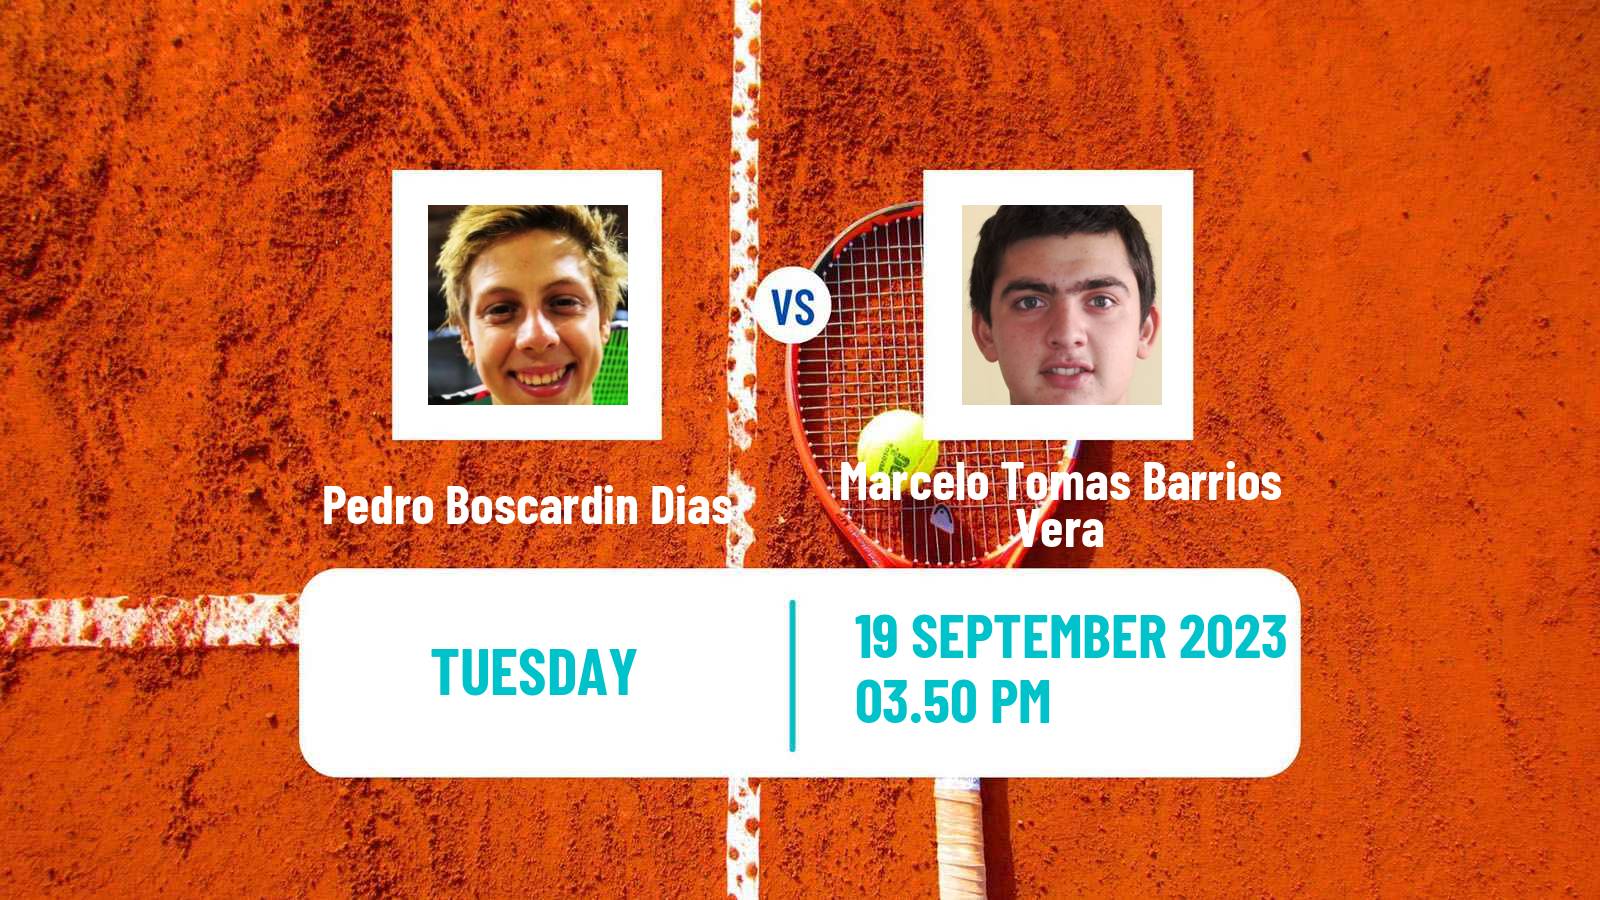 Tennis Antofagasta Challenger Men Pedro Boscardin Dias - Marcelo Tomas Barrios Vera